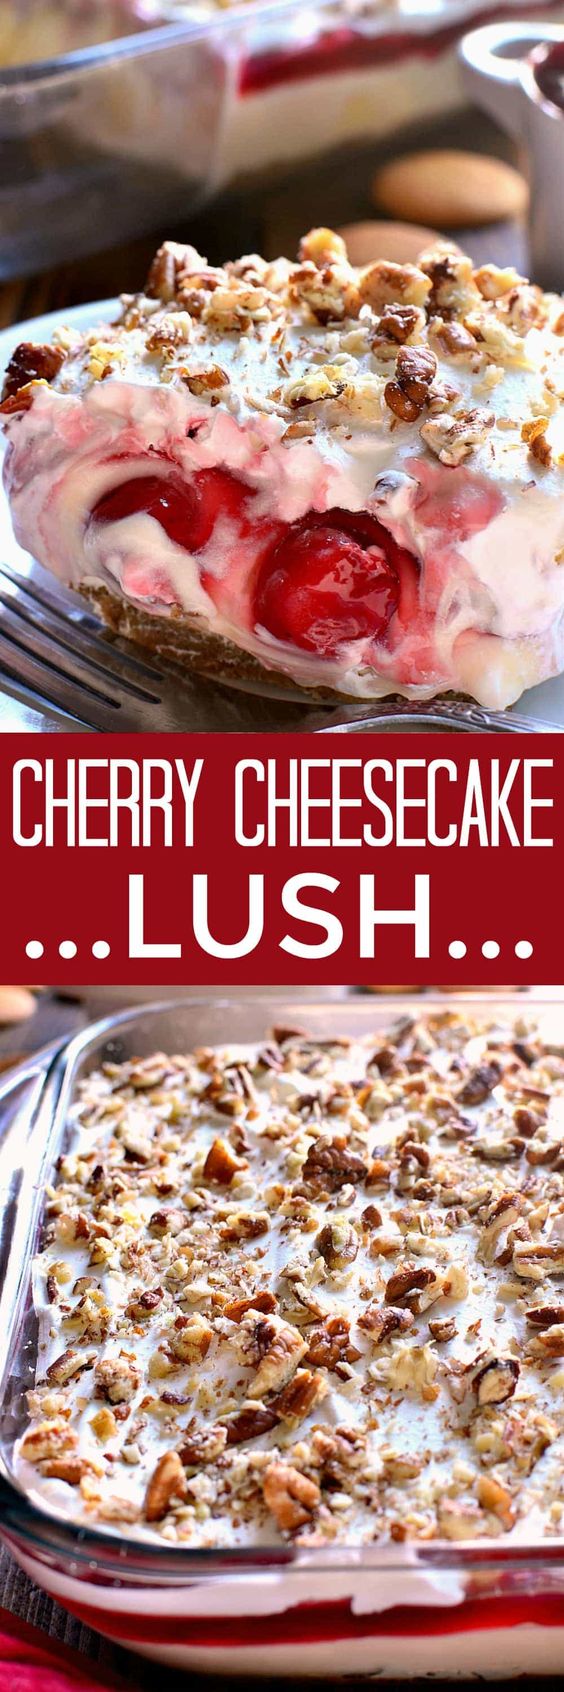 Cherry-Cheesecake-Lush-Dessert